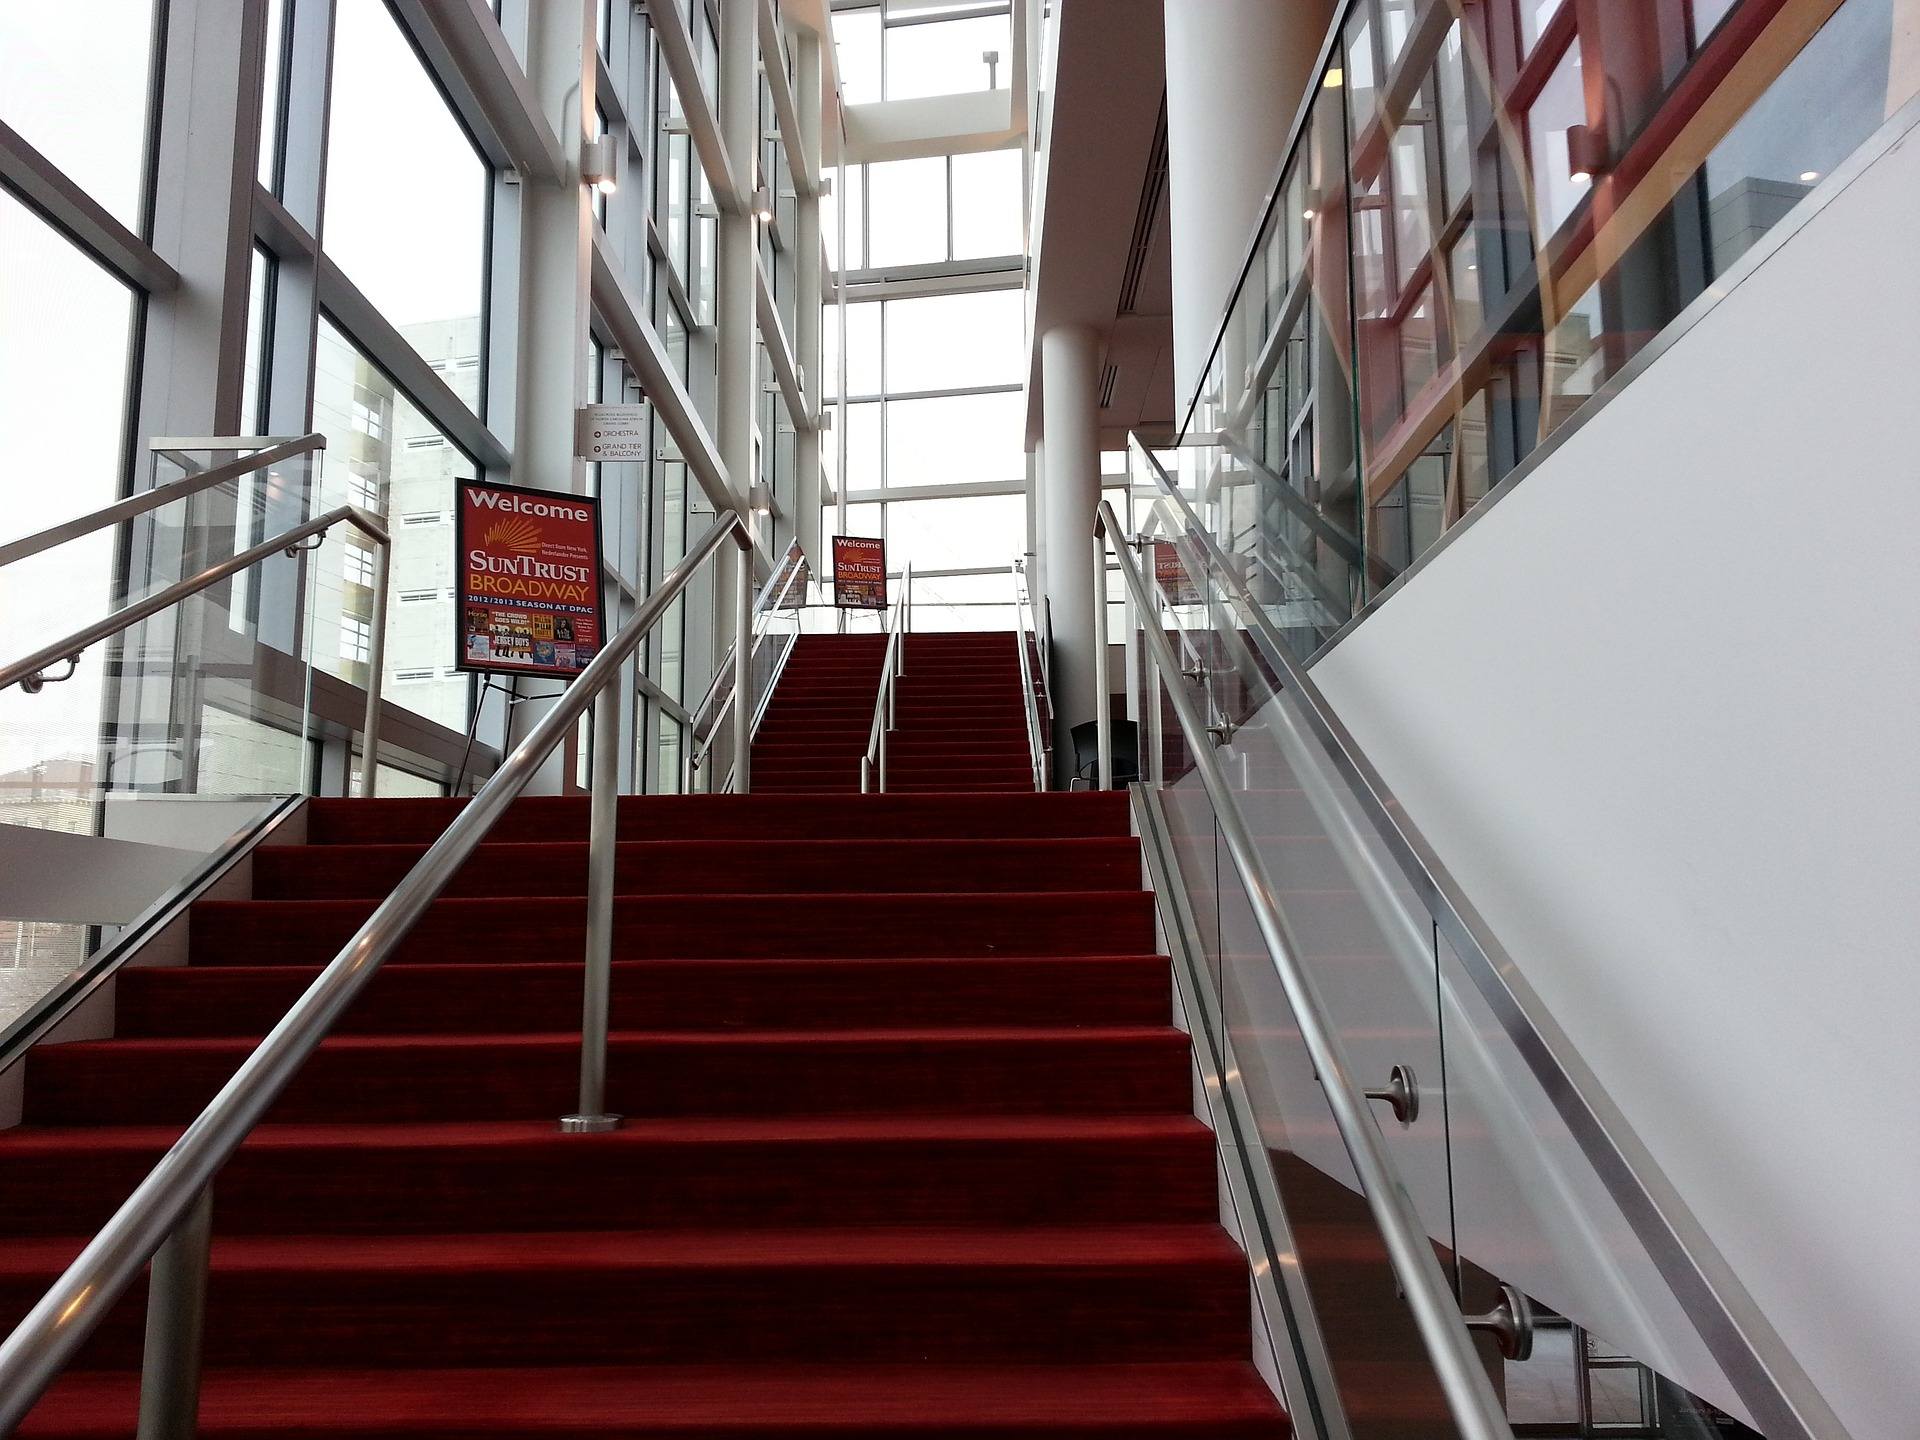 czerwony dywan na schodach we wnętrzu budynku